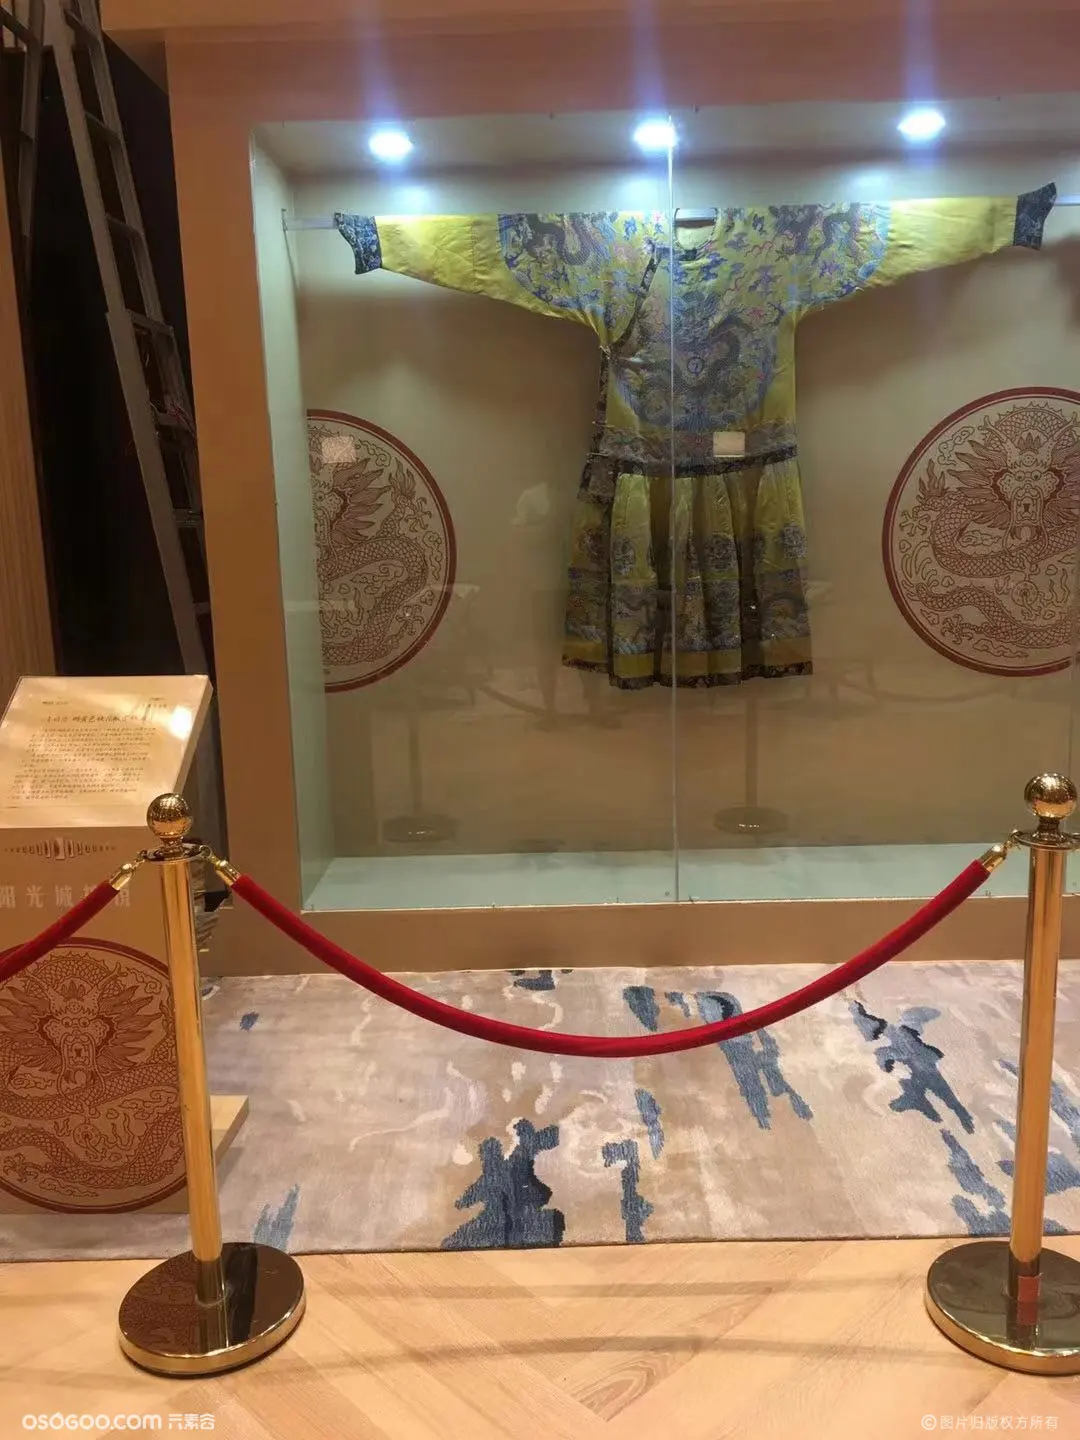 中国传统文艺展品龙袍首秀展览租赁